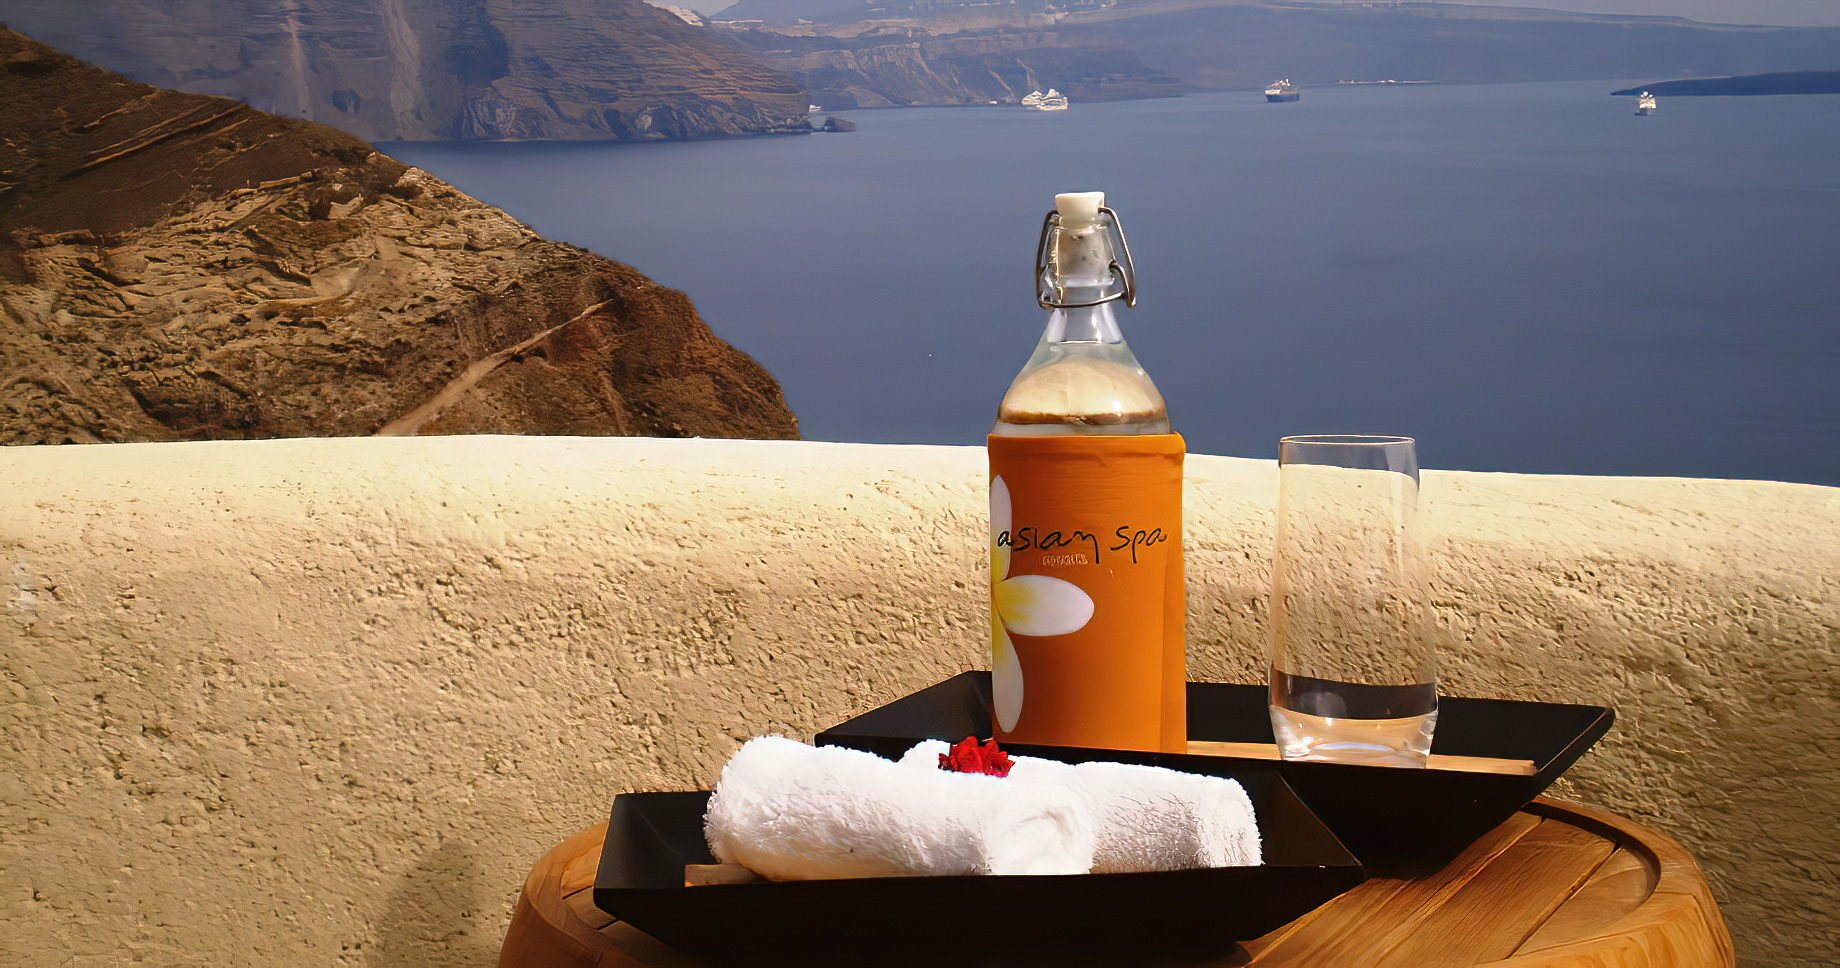 Mystique Hotel Santorini – Oia, Santorini Island, Greece – Luxury Spa Service